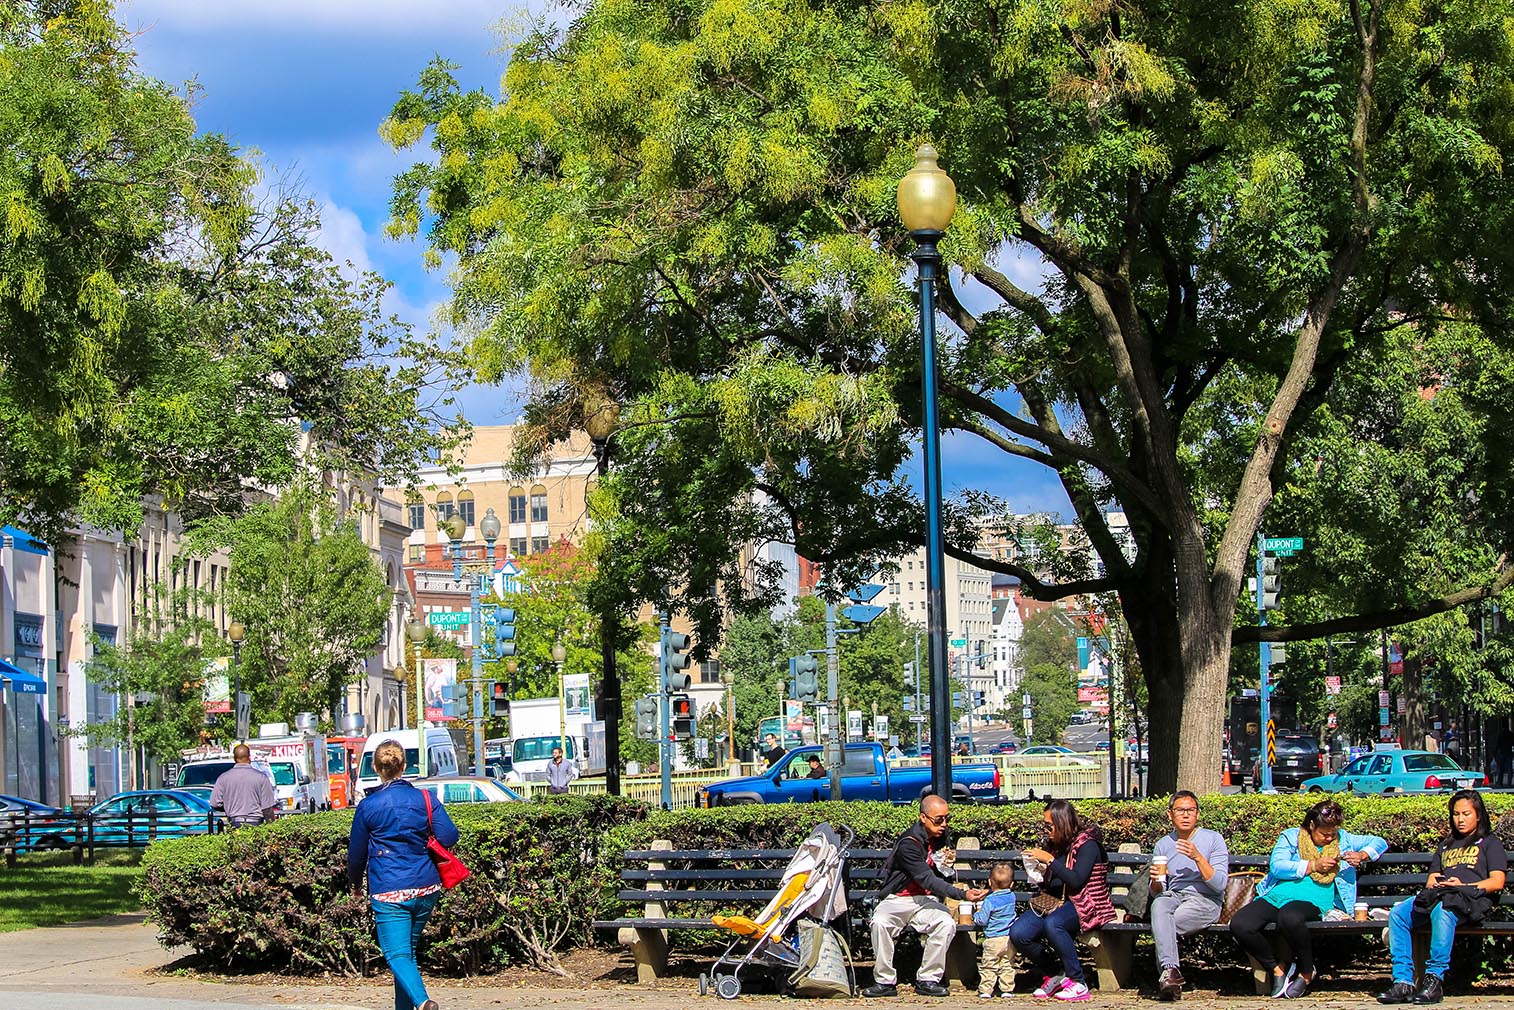 People sitting in Dupont Circle, Washington, D.C.